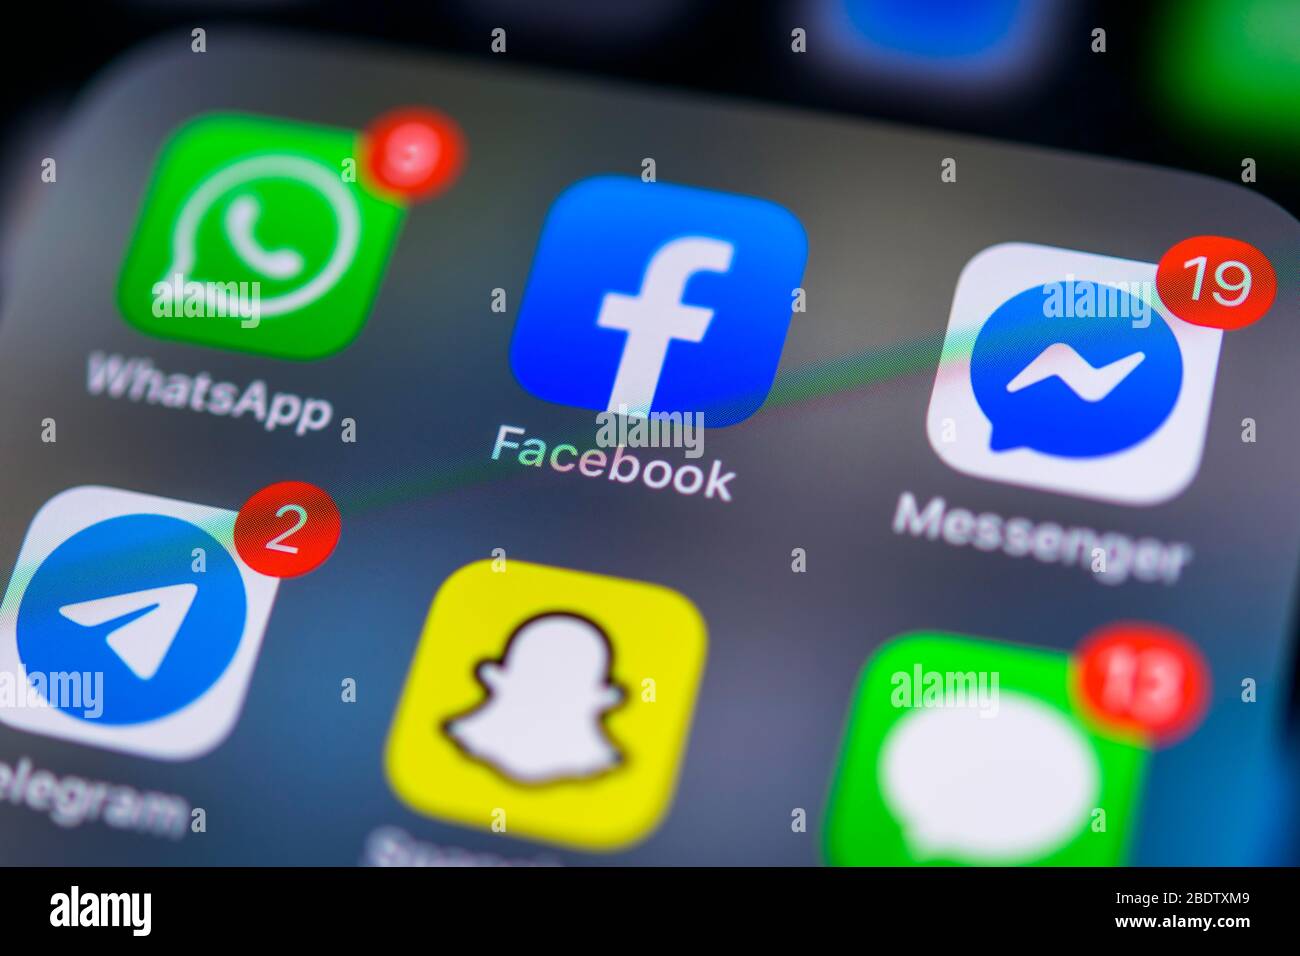 WhatsApp, Facebook und Facebook Messenger App, soziales Netzwerk, App-Symbol, Display auf Handy, Smartphone, Detail, Vollformat Stockfoto